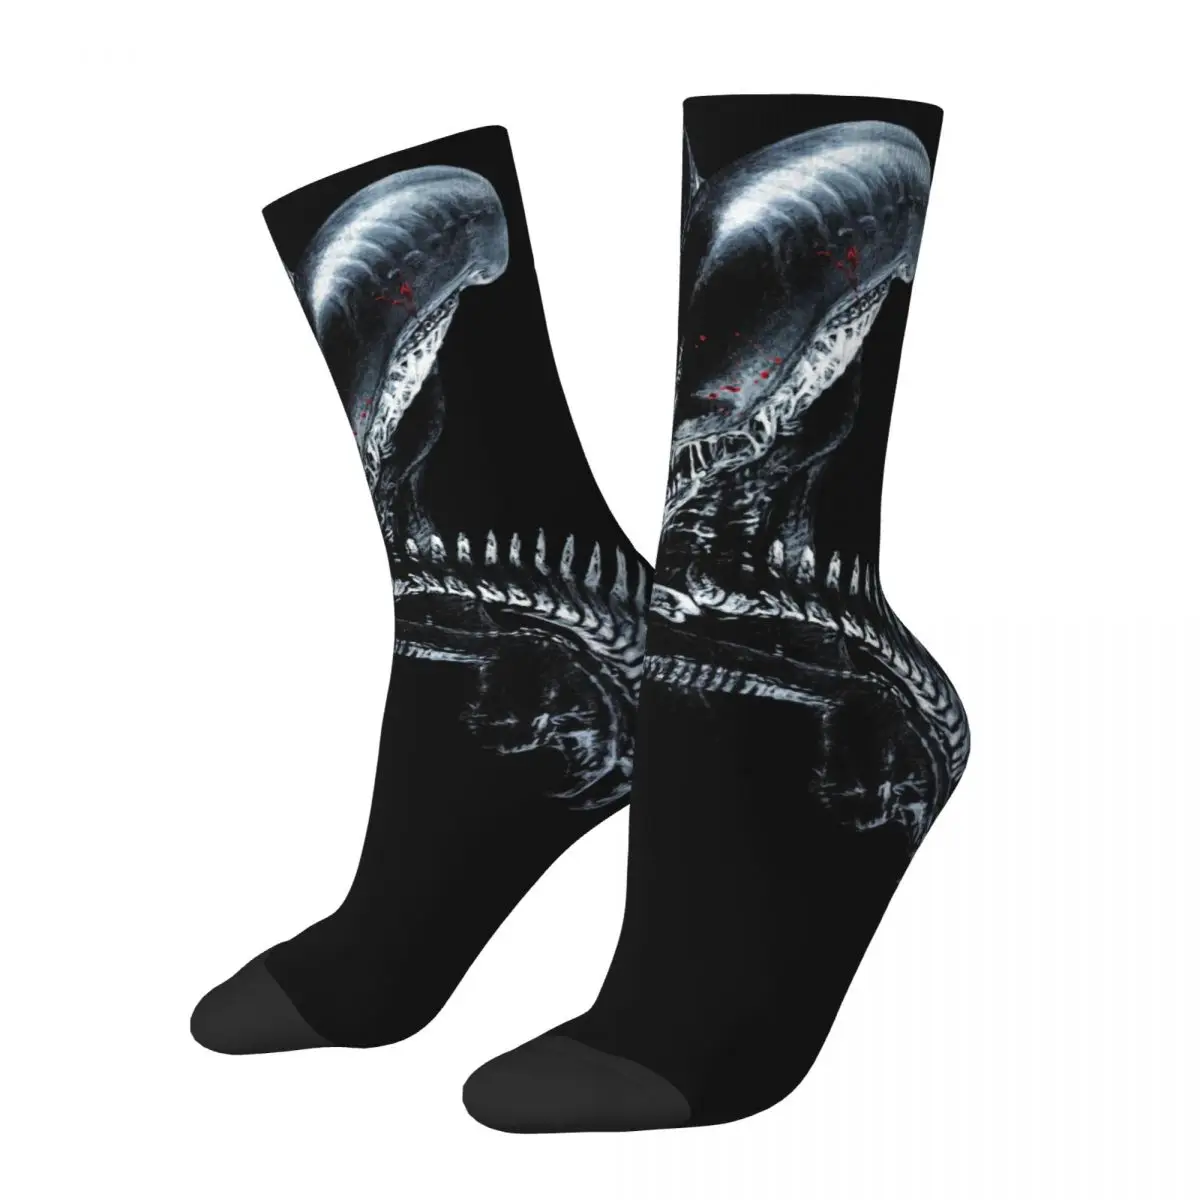 Xenomorph Essential Alien унисекс ветрозащитные носки с 3D принтом счастливые носки уличный стиль сумасшедшие носки